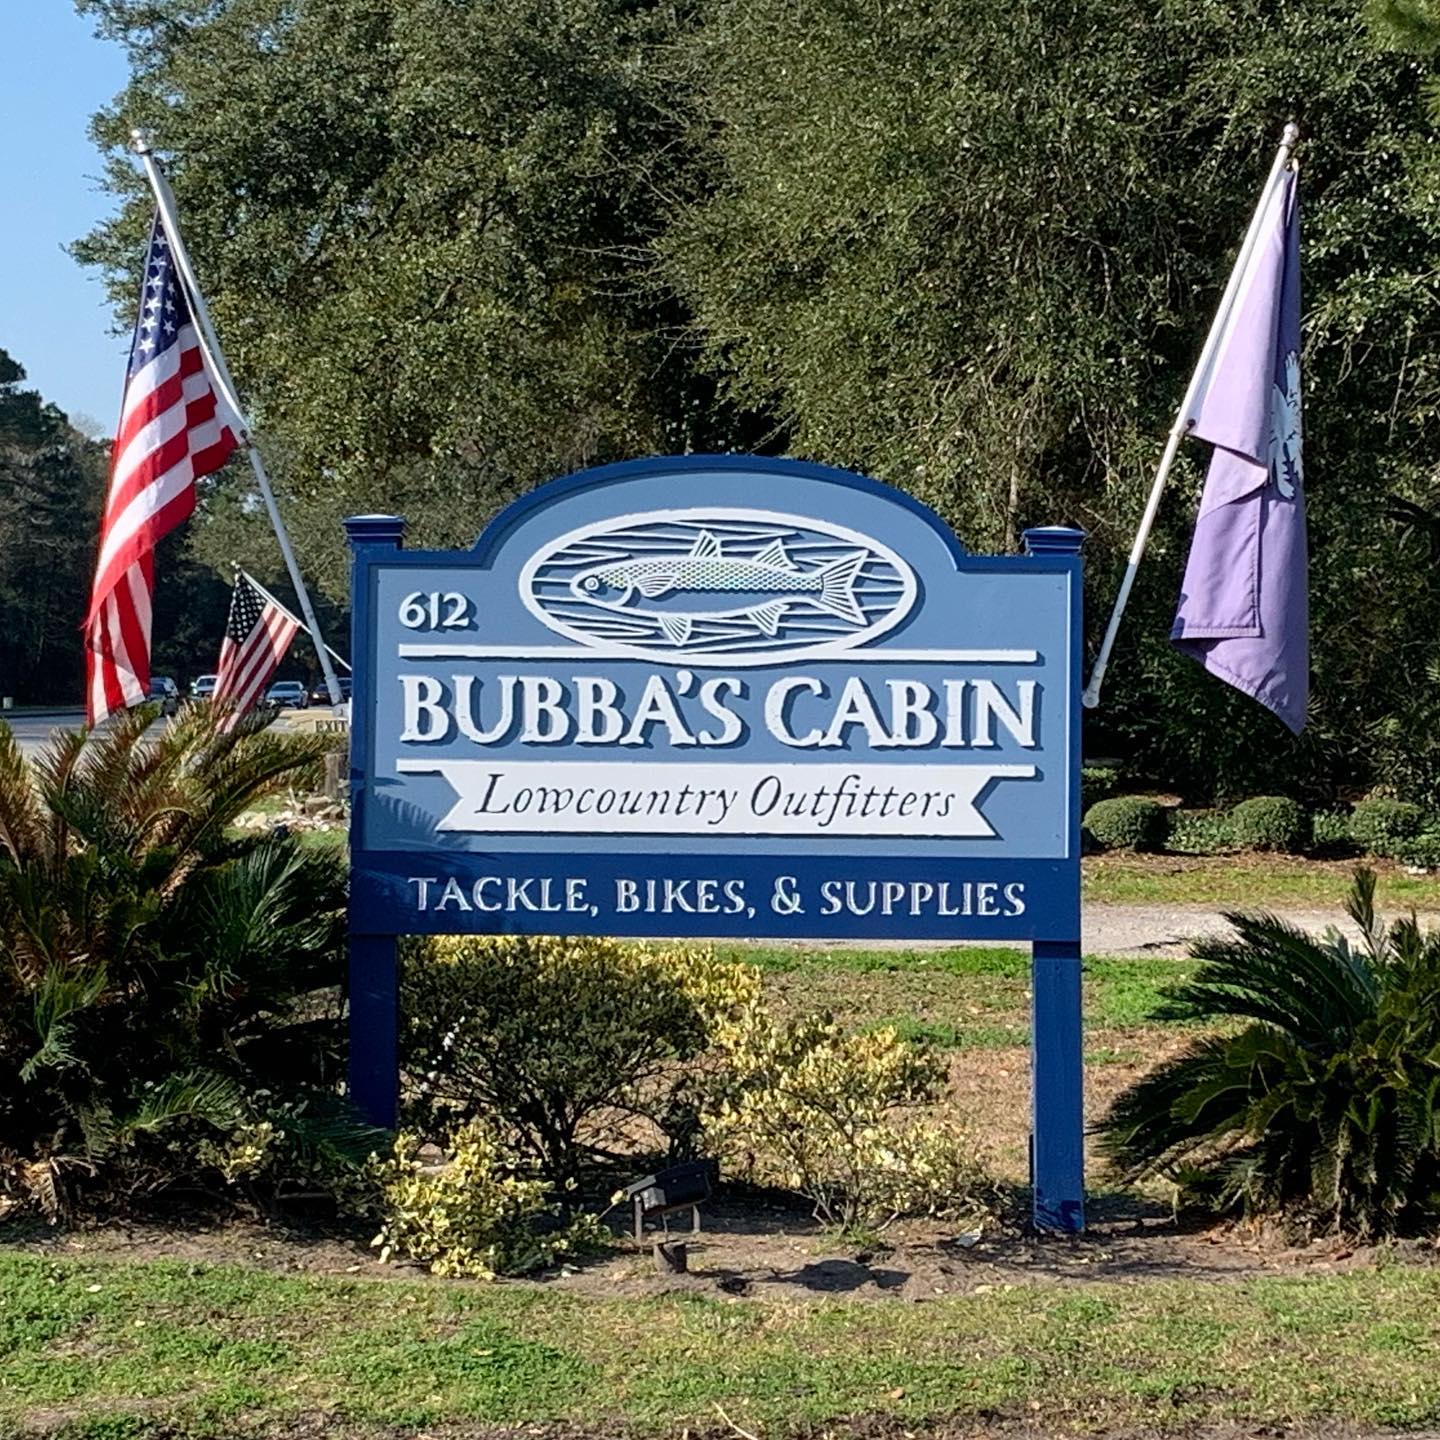 Bubba's Cabin